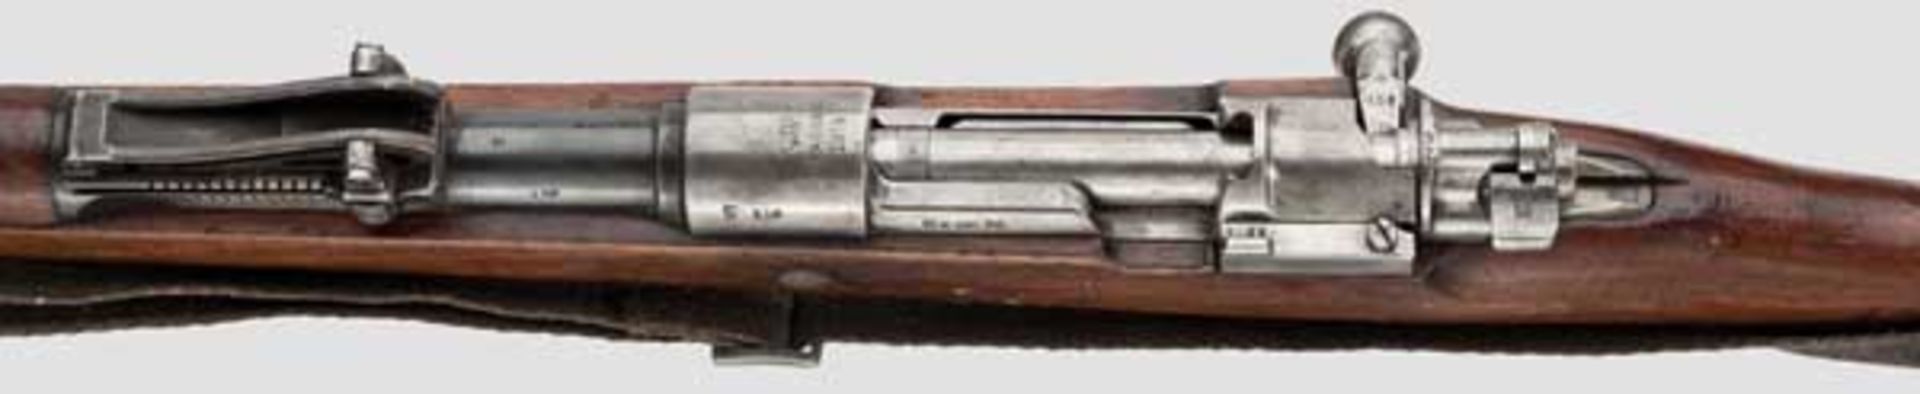 Radfahrergewehr 98, Spandau, 1914 Kal. 8 x 57, Nr. 158. Vollkommen nummerngleich inkl. Schrauben bis - Bild 3 aus 4